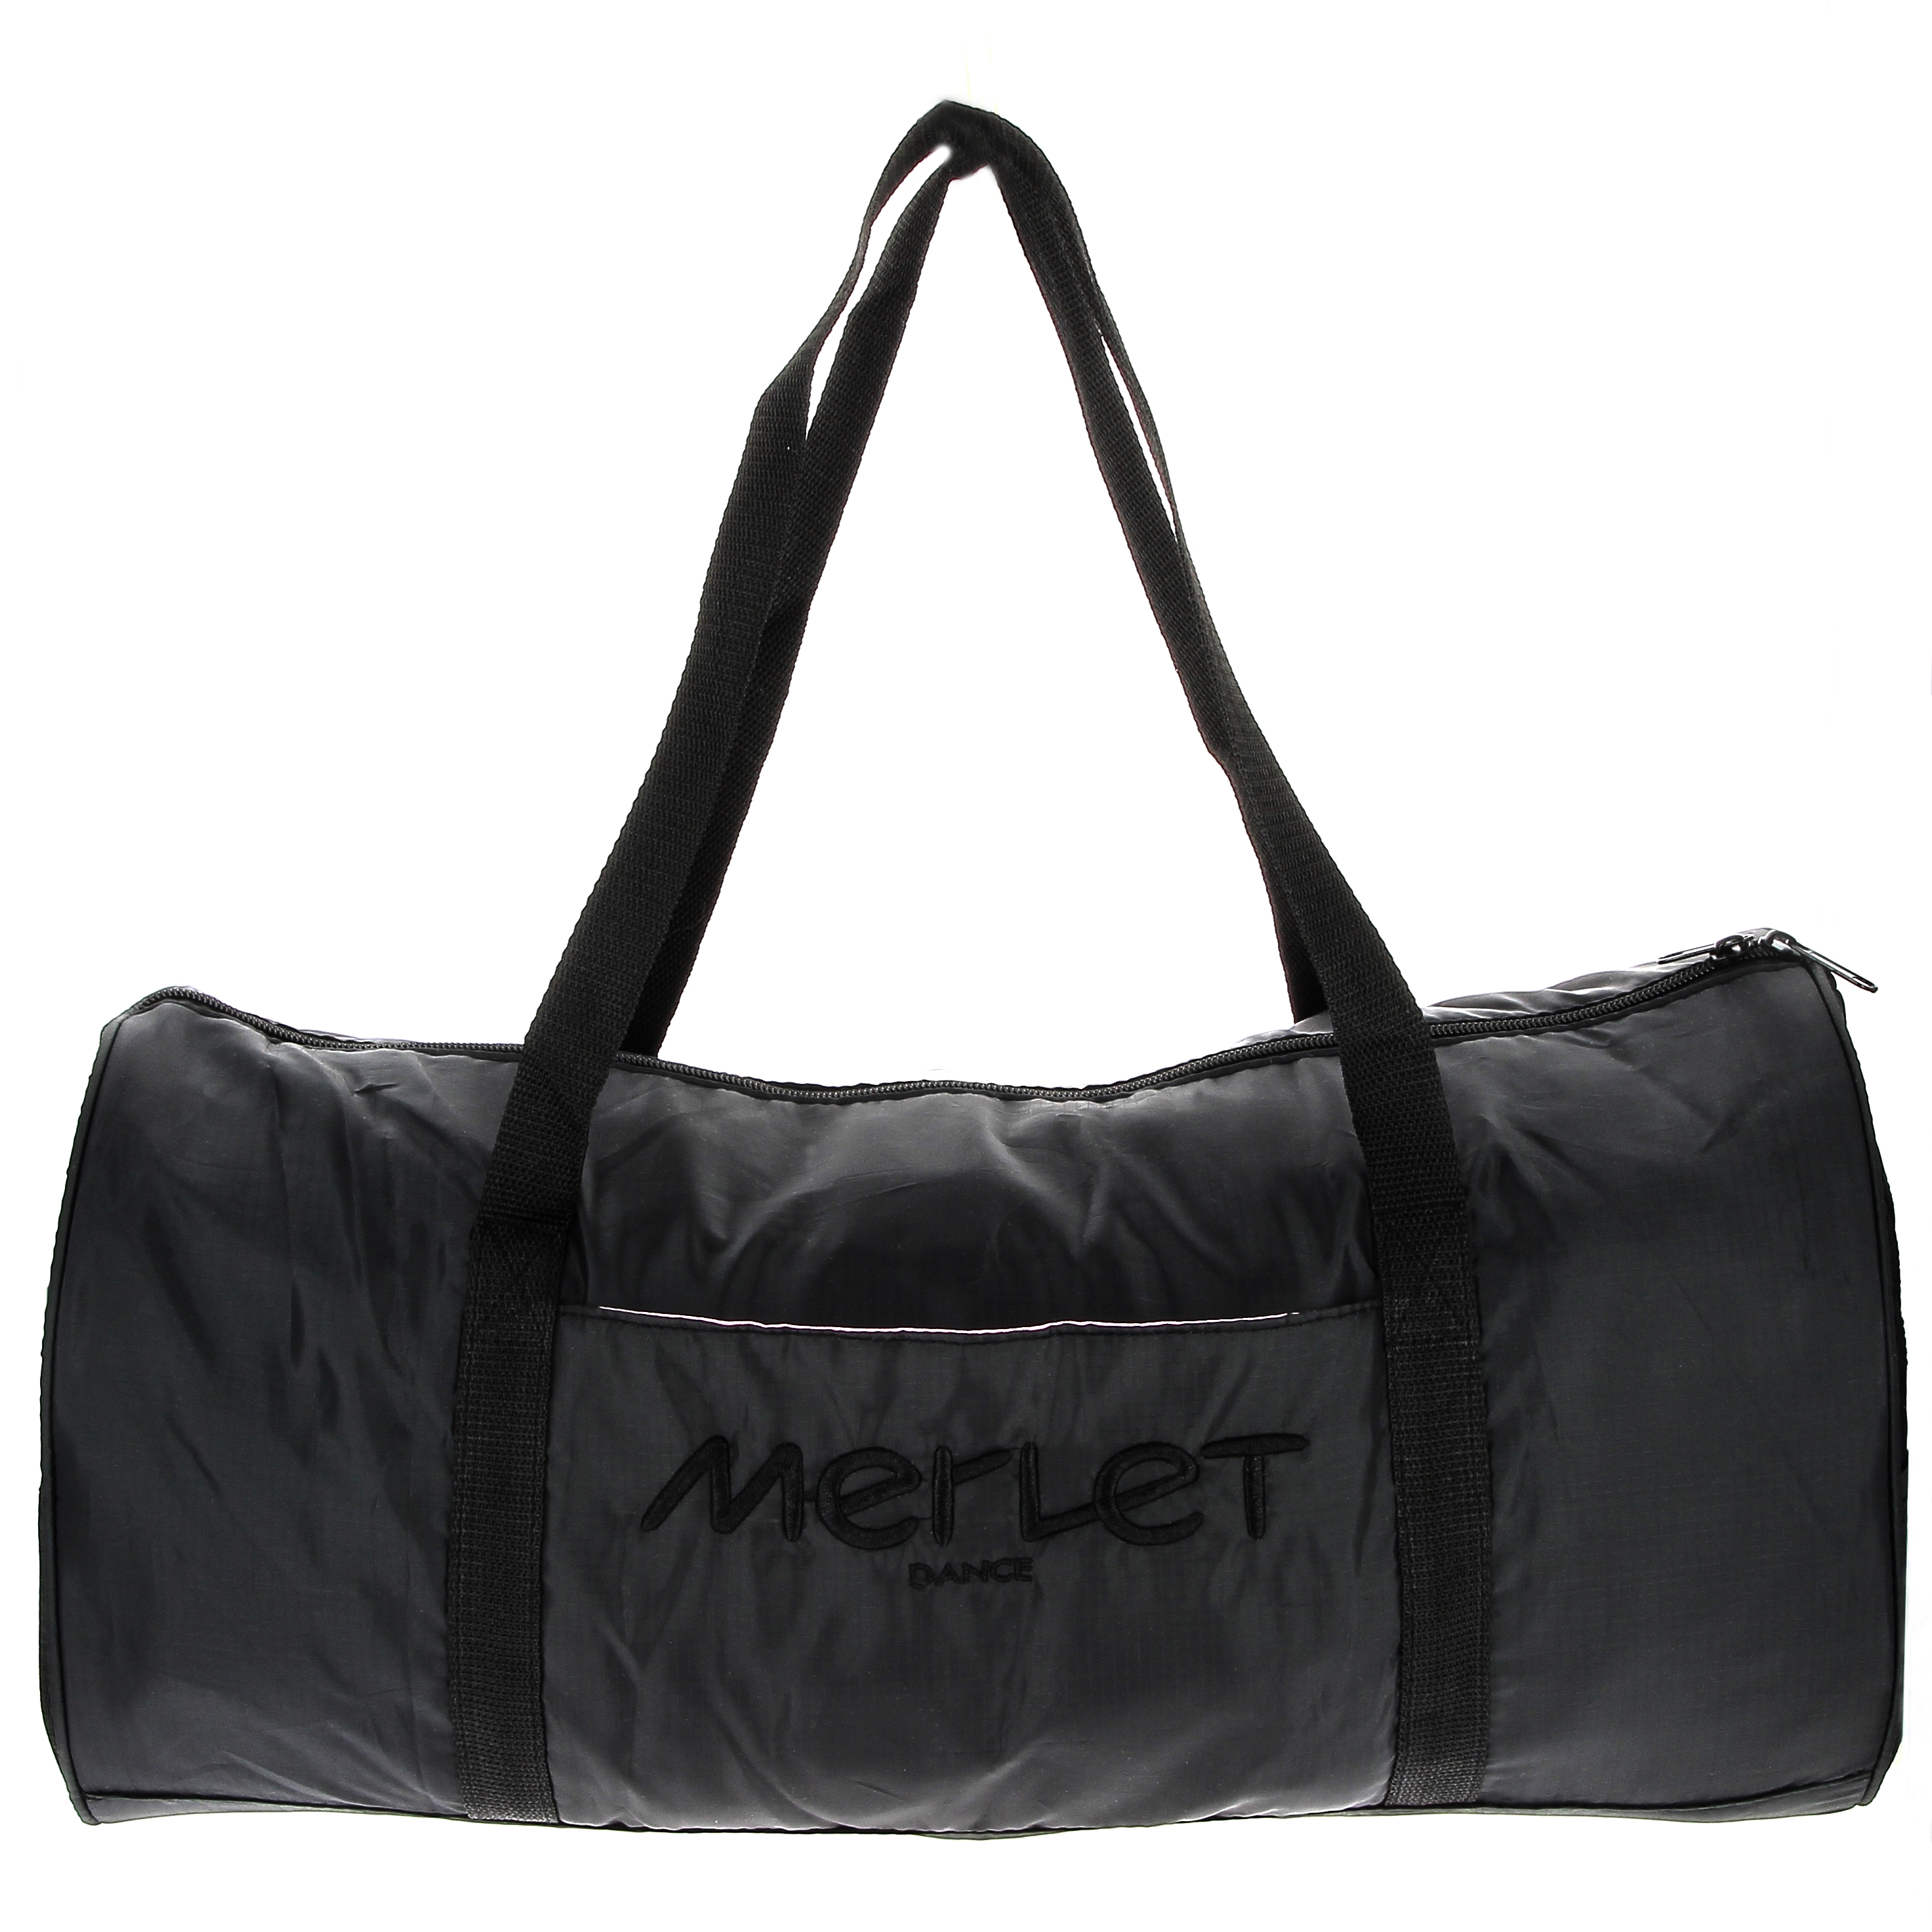 NOUVEAU! Le sac de danse by MERLET – Merlet